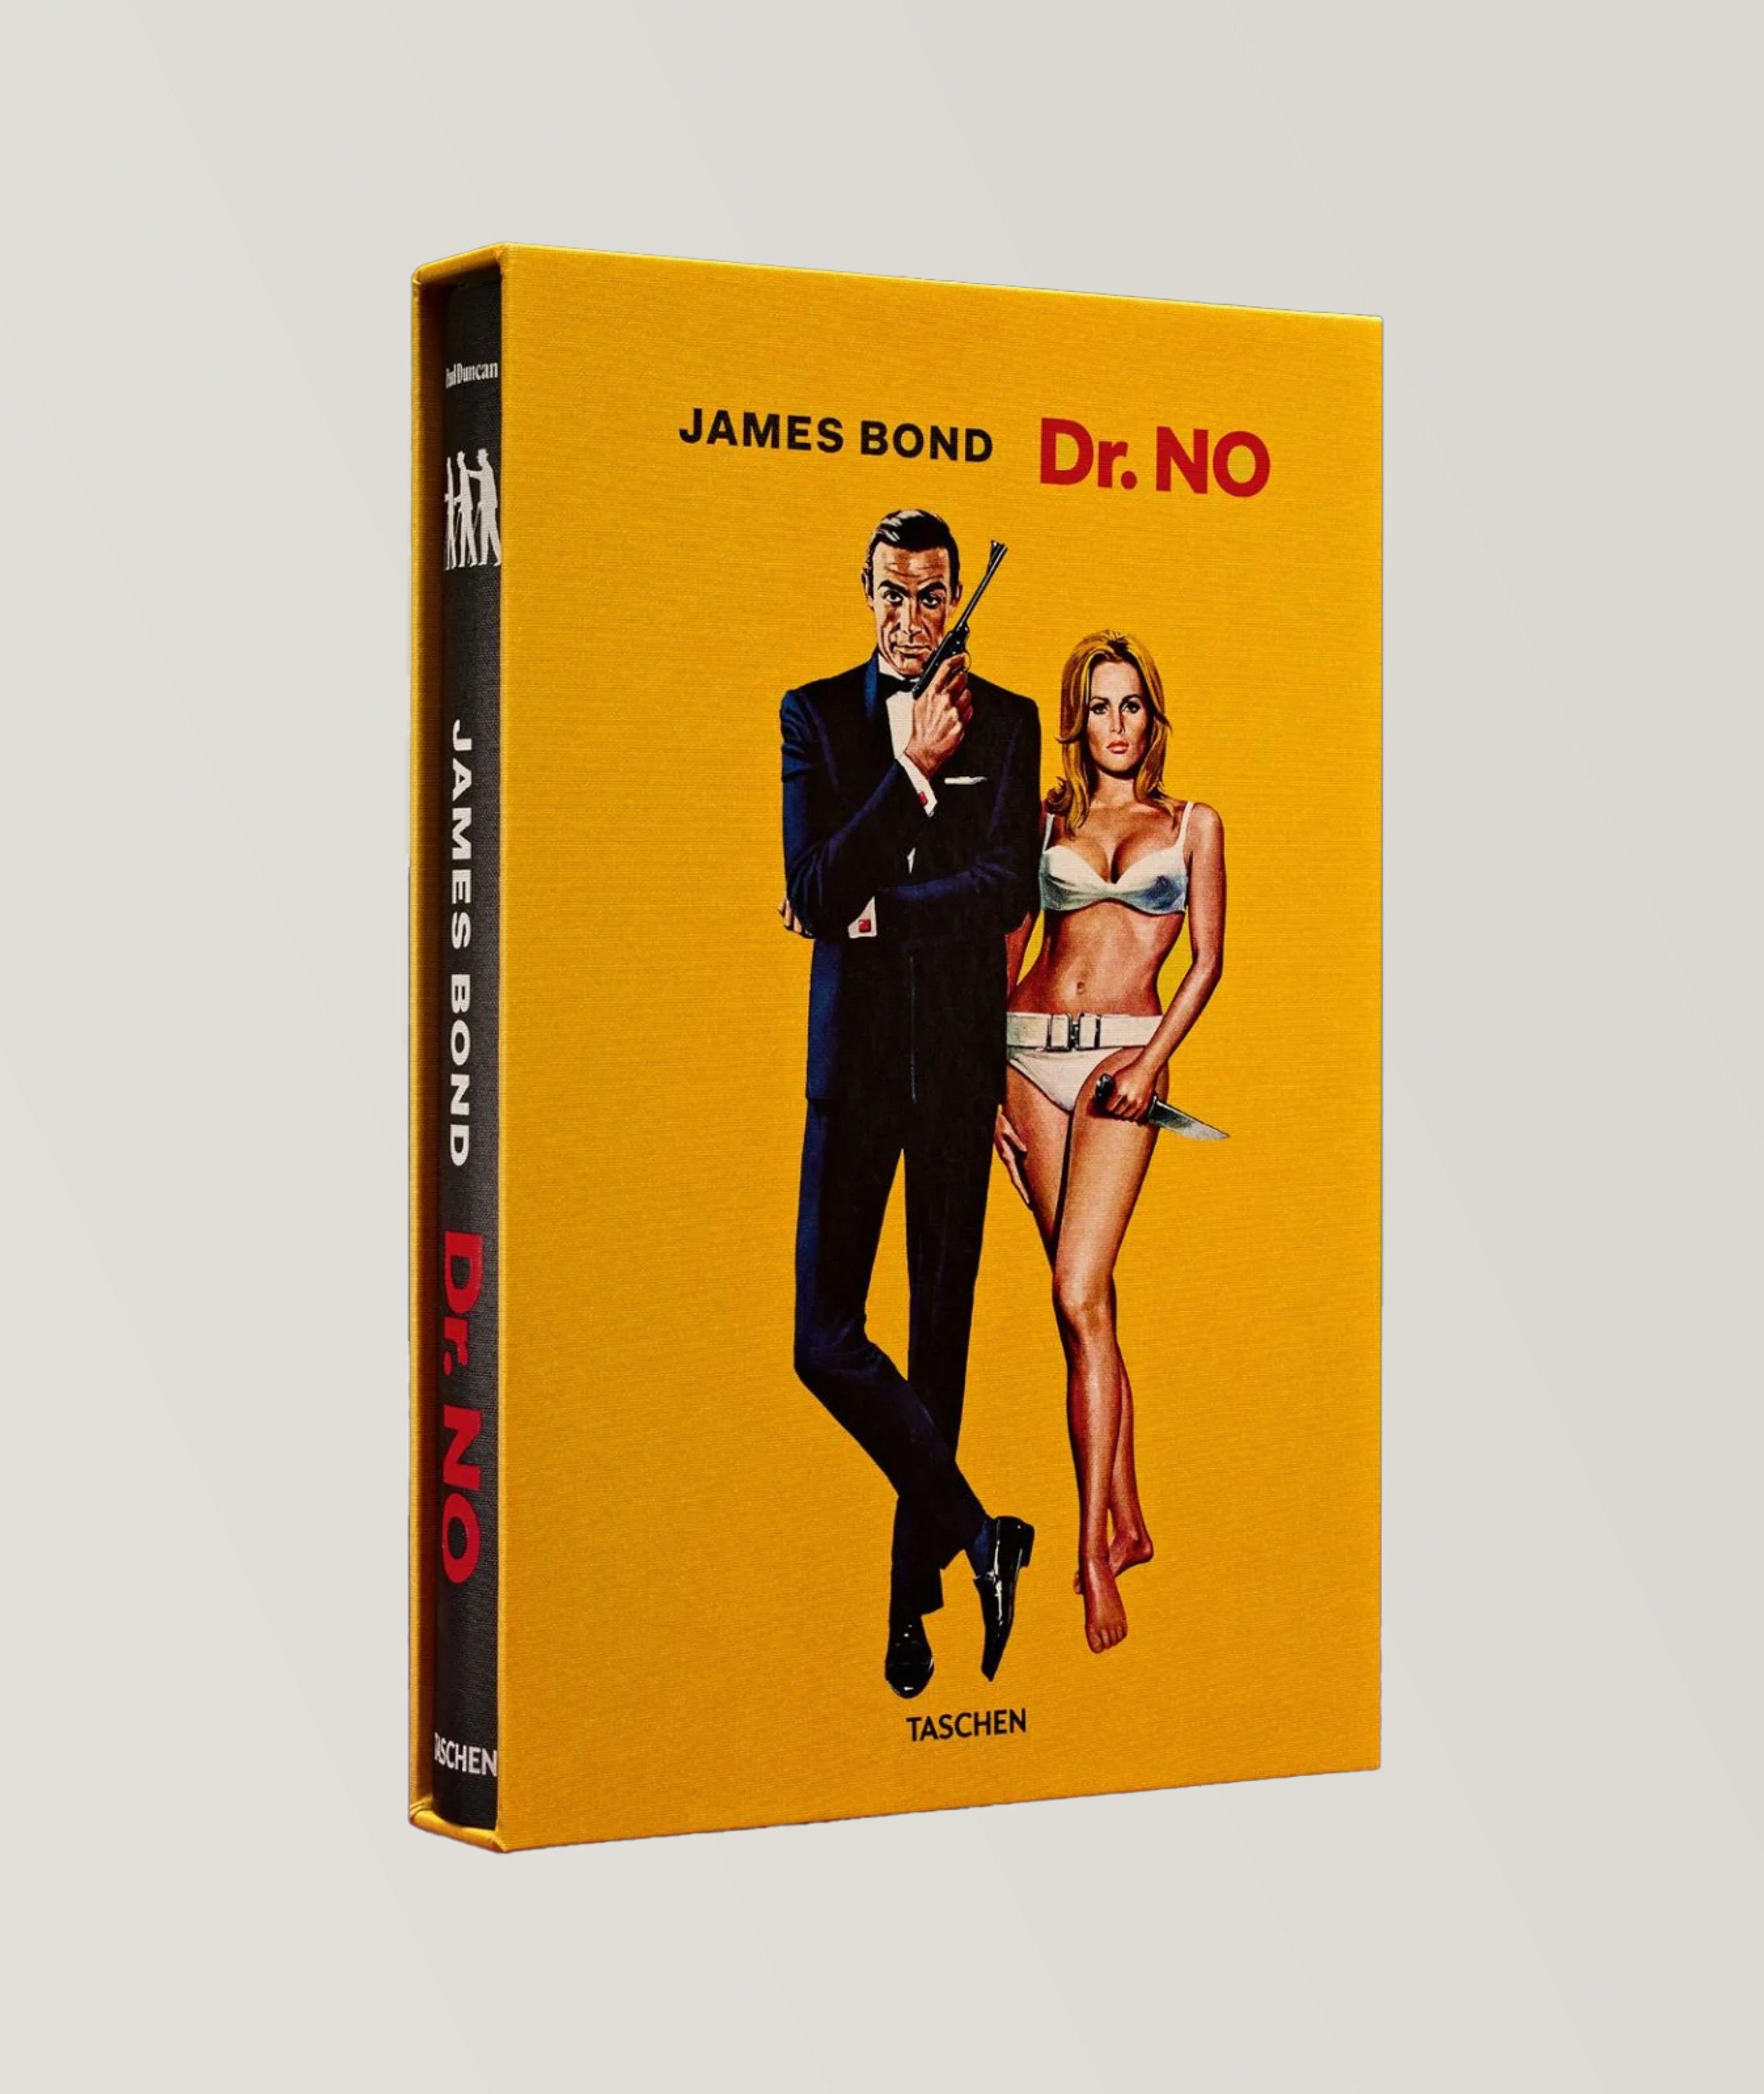 Taschen Limited Edition James Bond Dr. No Book